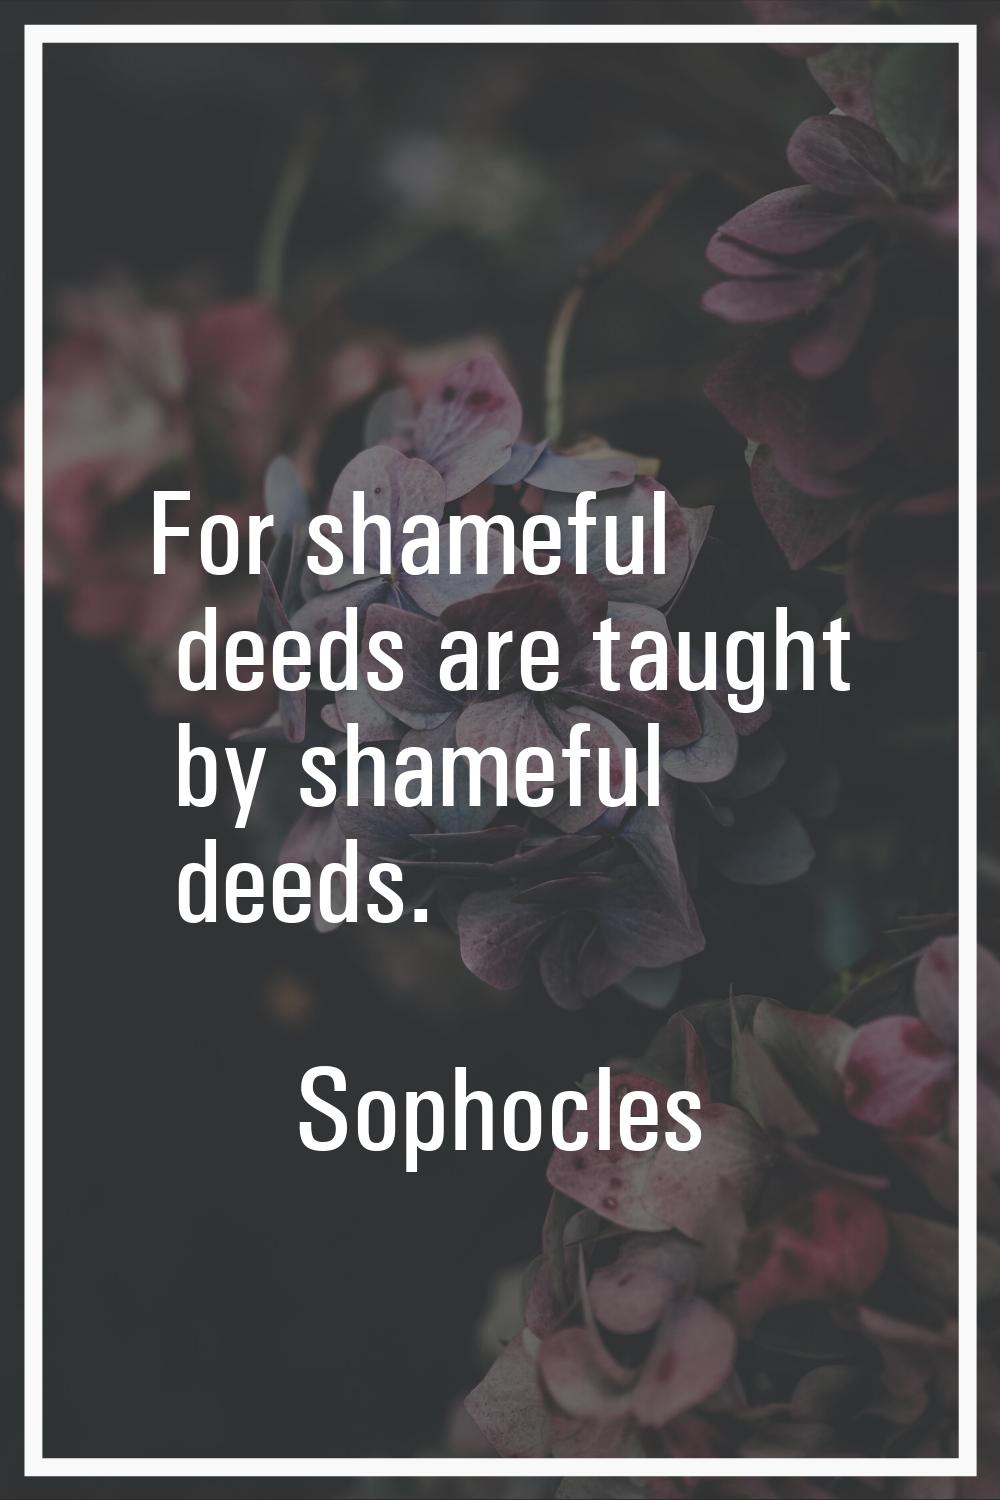 For shameful deeds are taught by shameful deeds.